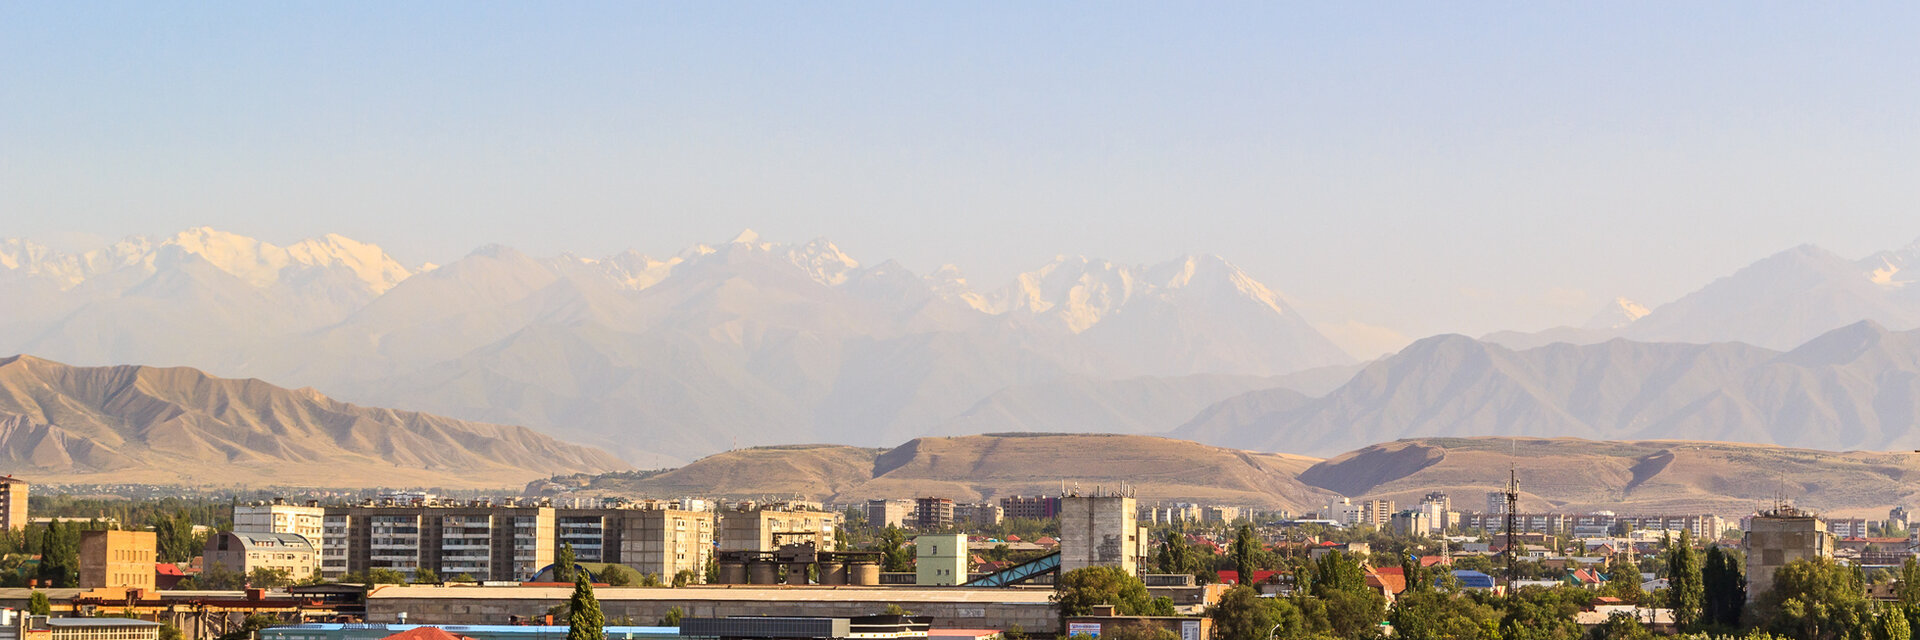 Поиск спа-отелей Бишкека